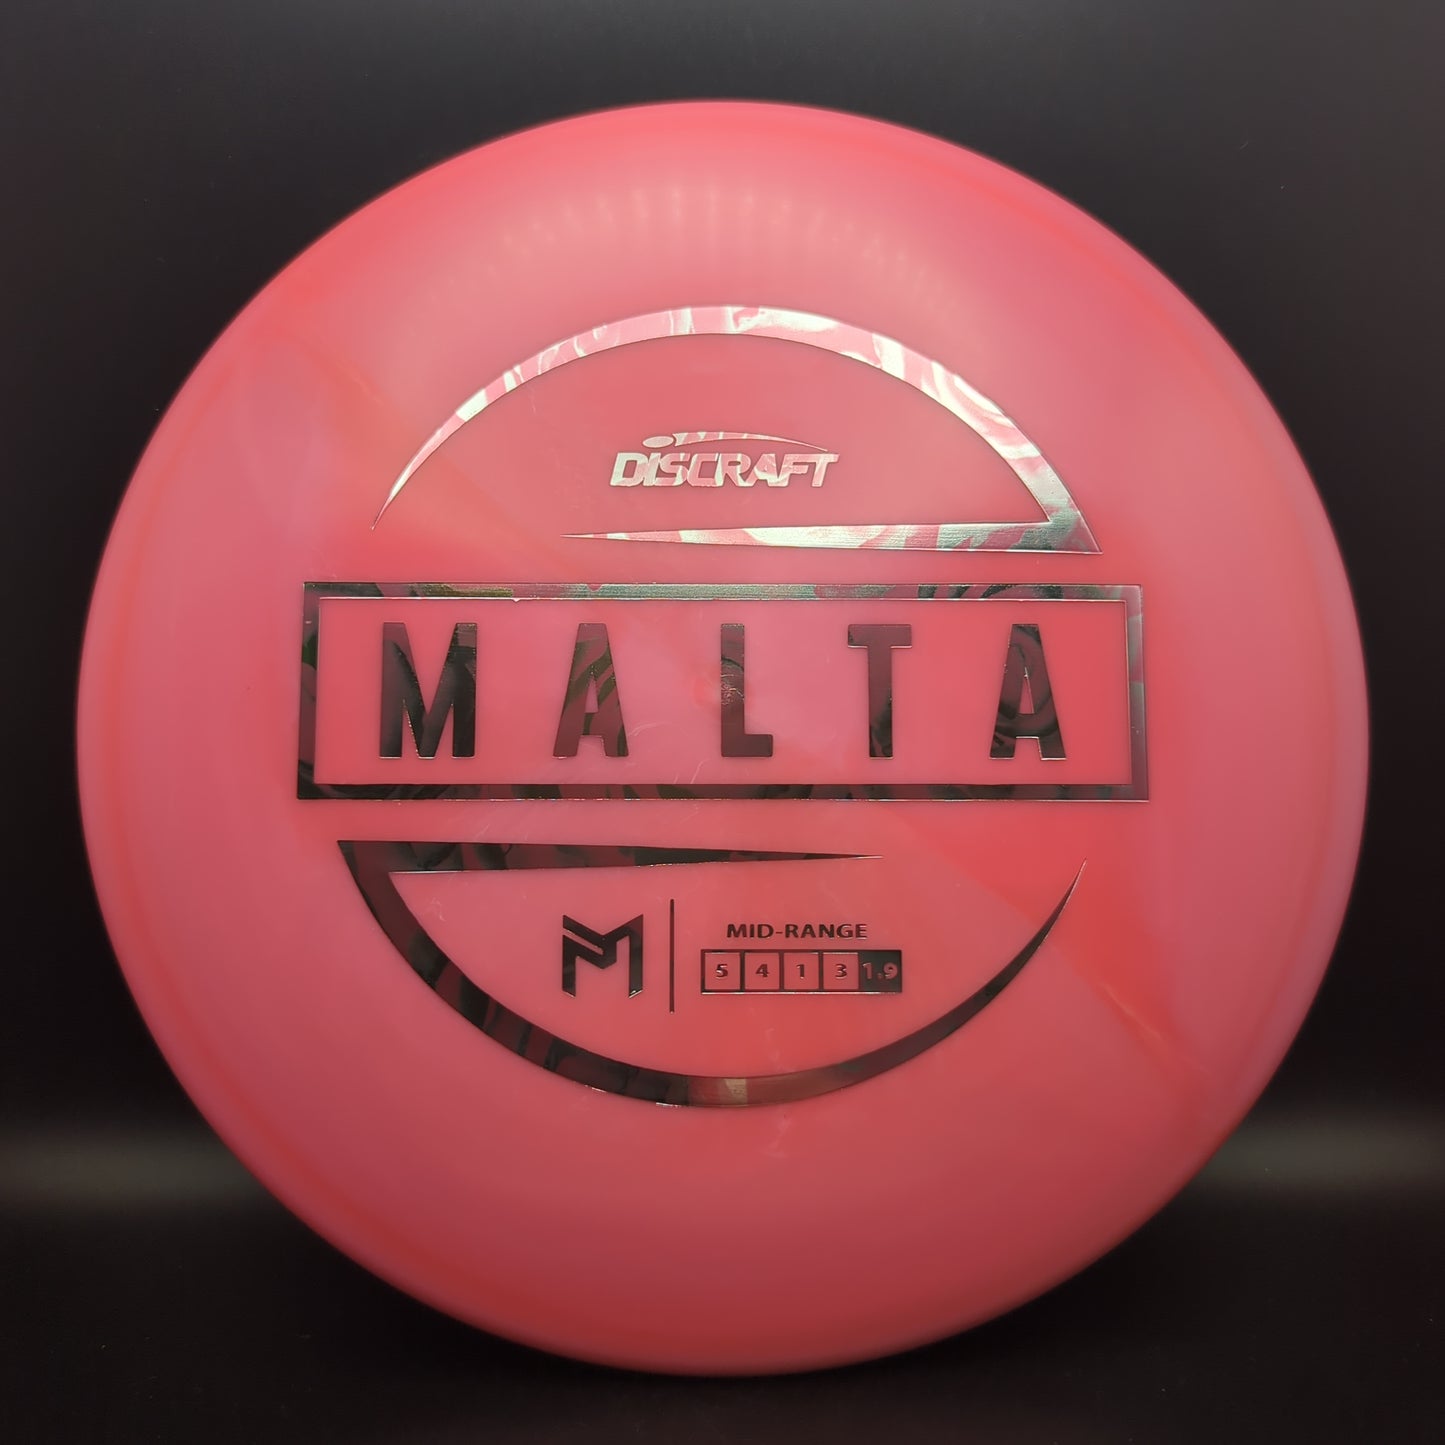 ESP Malta - Paul McBeth Discraft